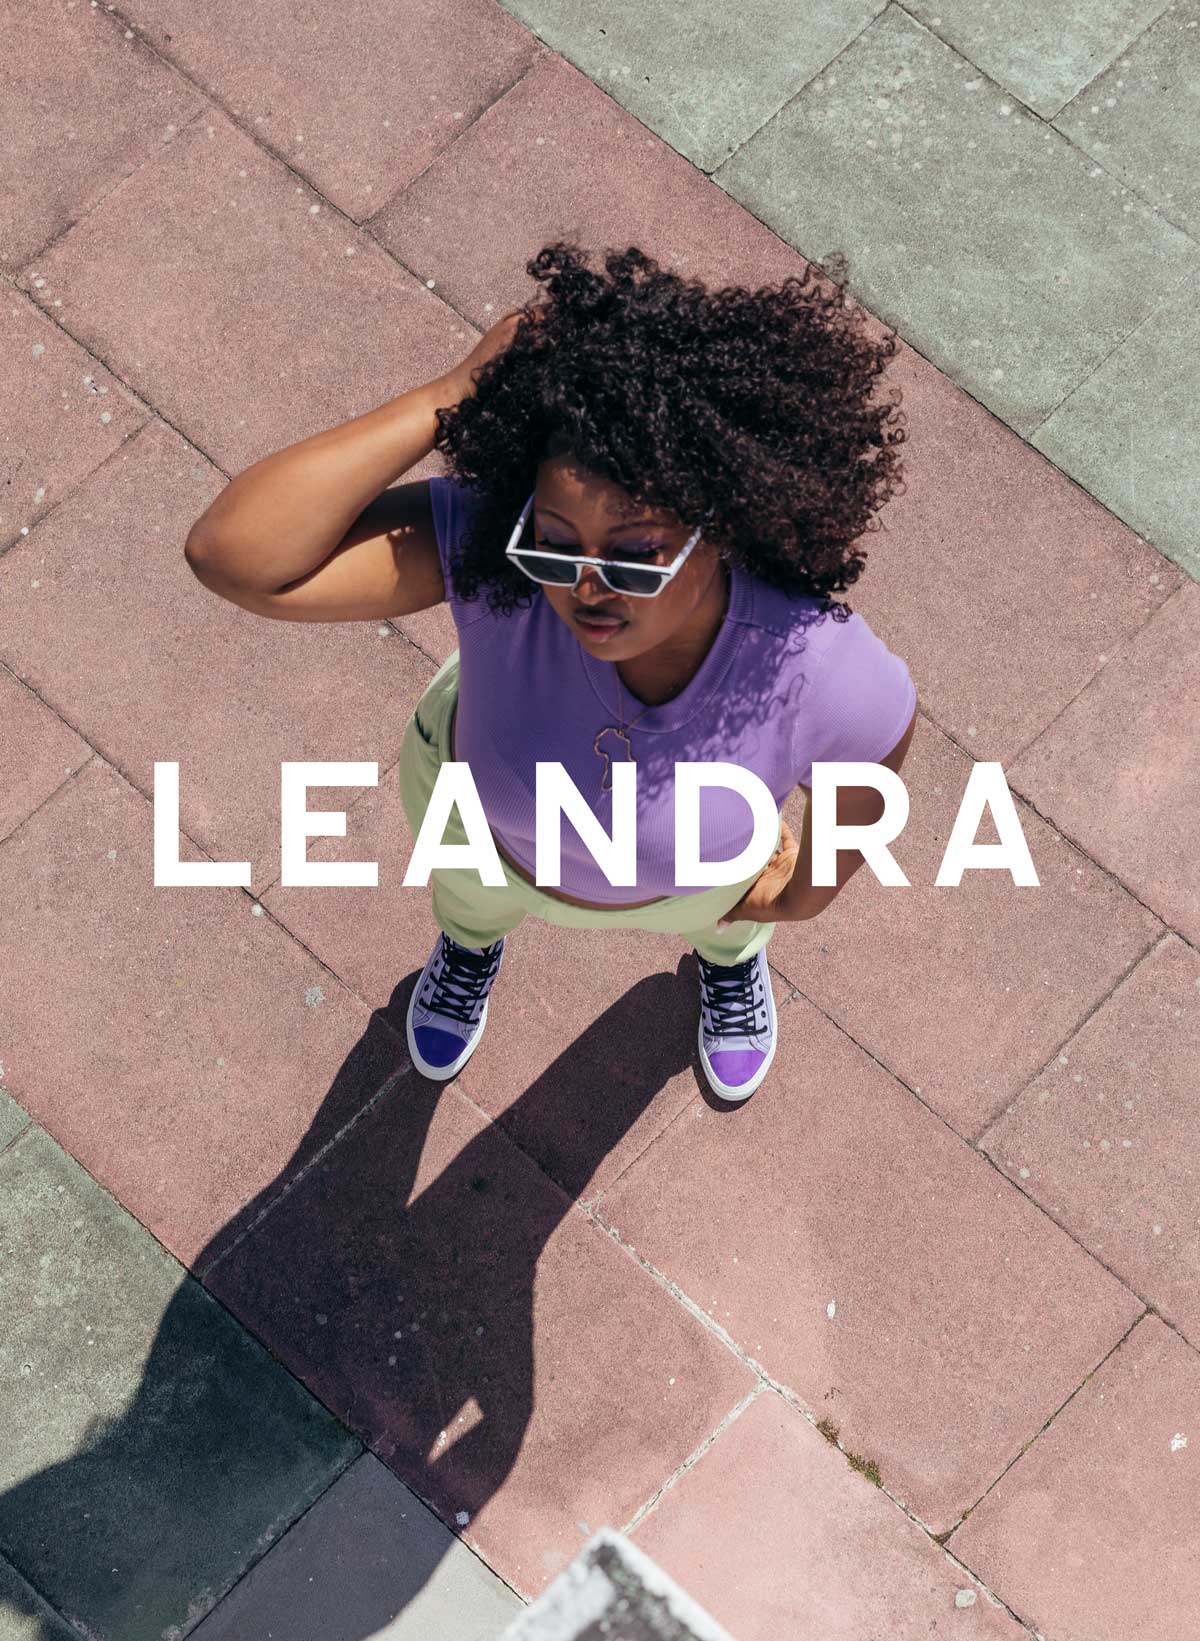 Leandra en chemise violette et lunettes de soleil debout sur un trottoir, portant Diverge sneakers, promouvant l’impact social et les chaussures personnalisées à travers le projet Imagine.